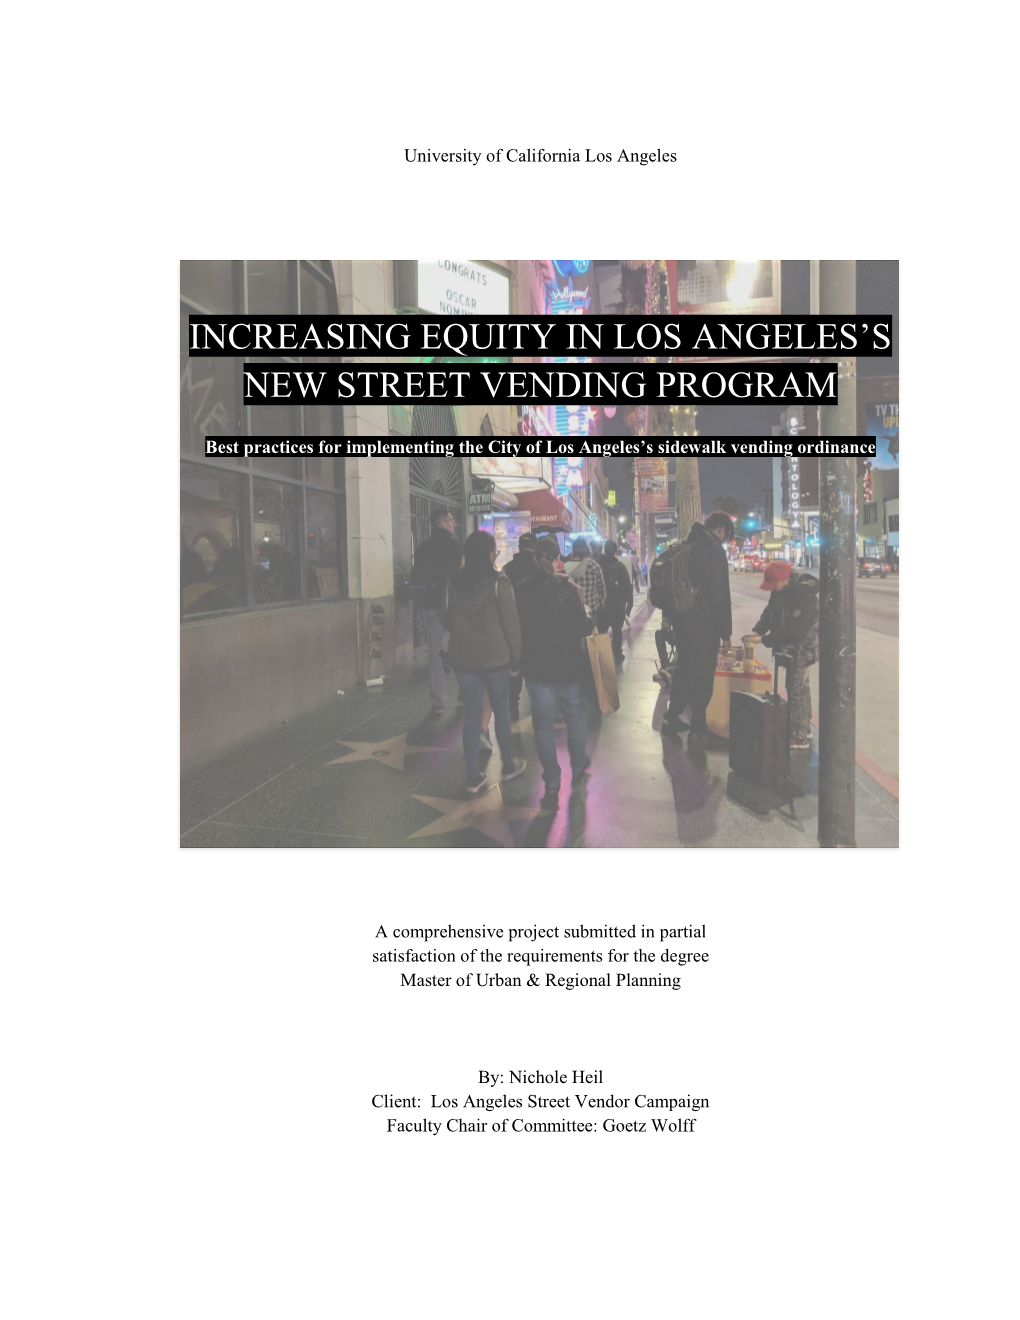 Increasing Equity in Los Angeles's New Street